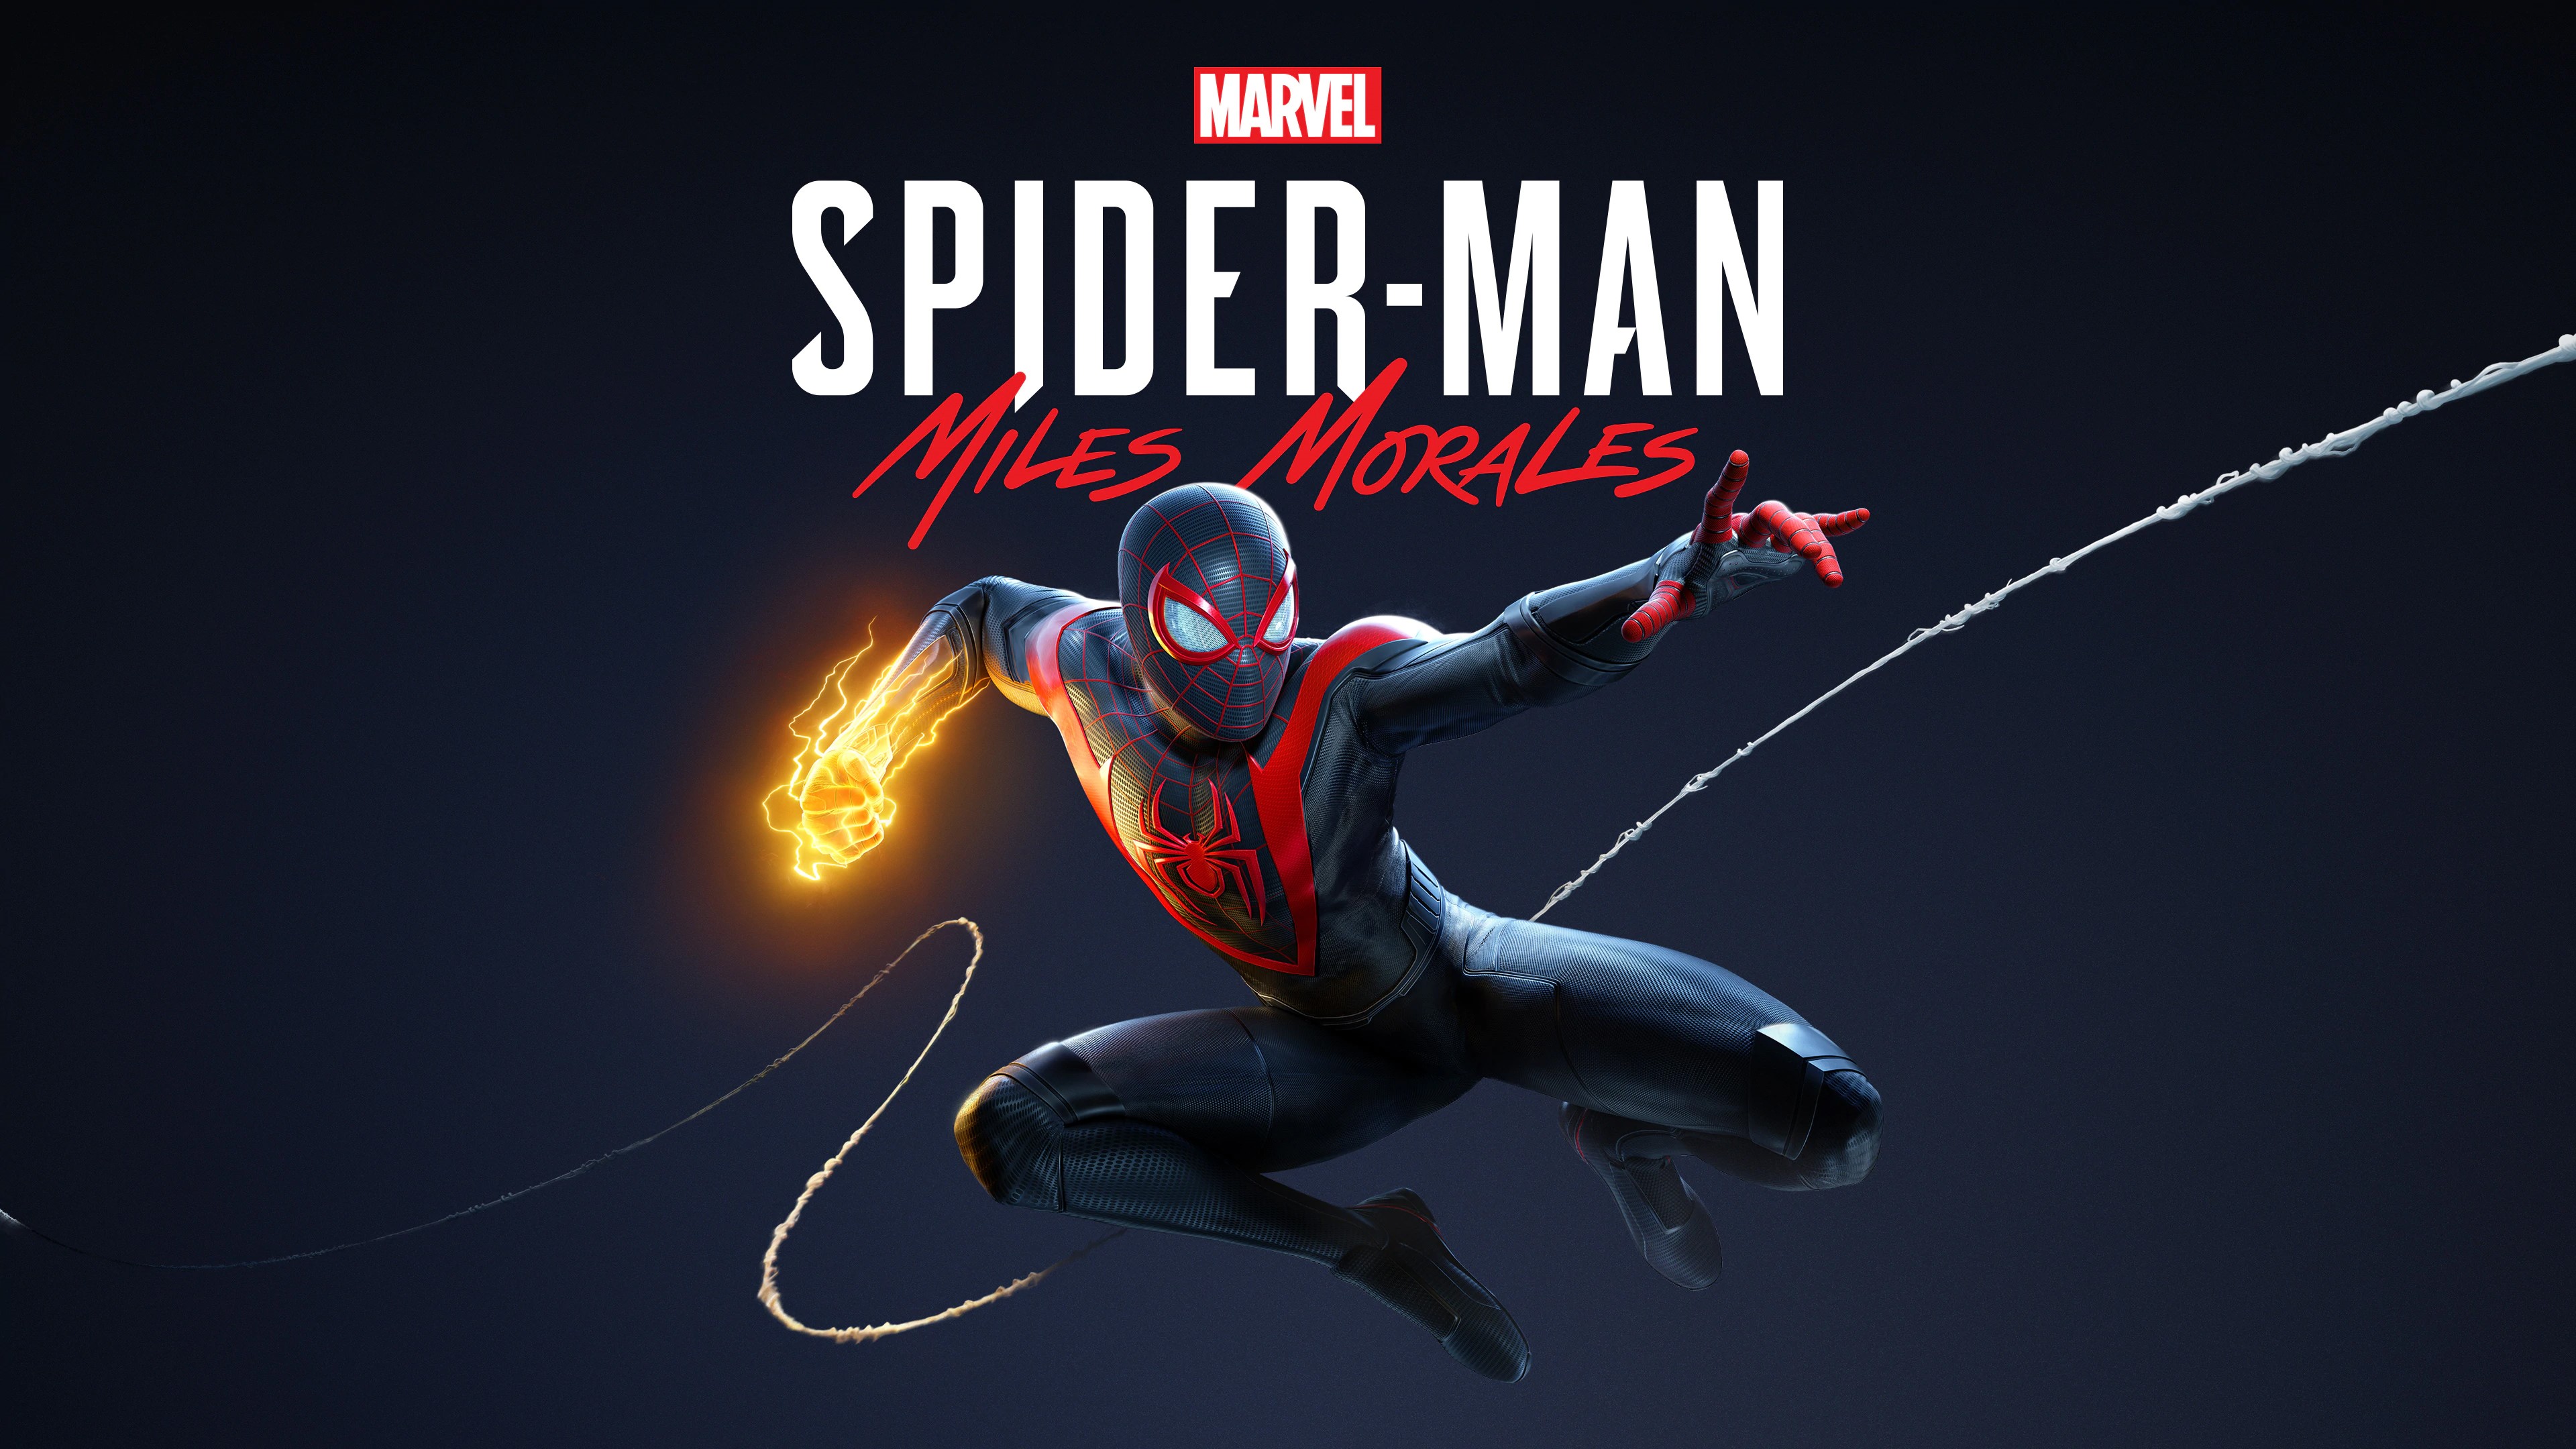 Marvel's Человек-паук /// Spider-Man: Miles Morales ( прохождение 13 )